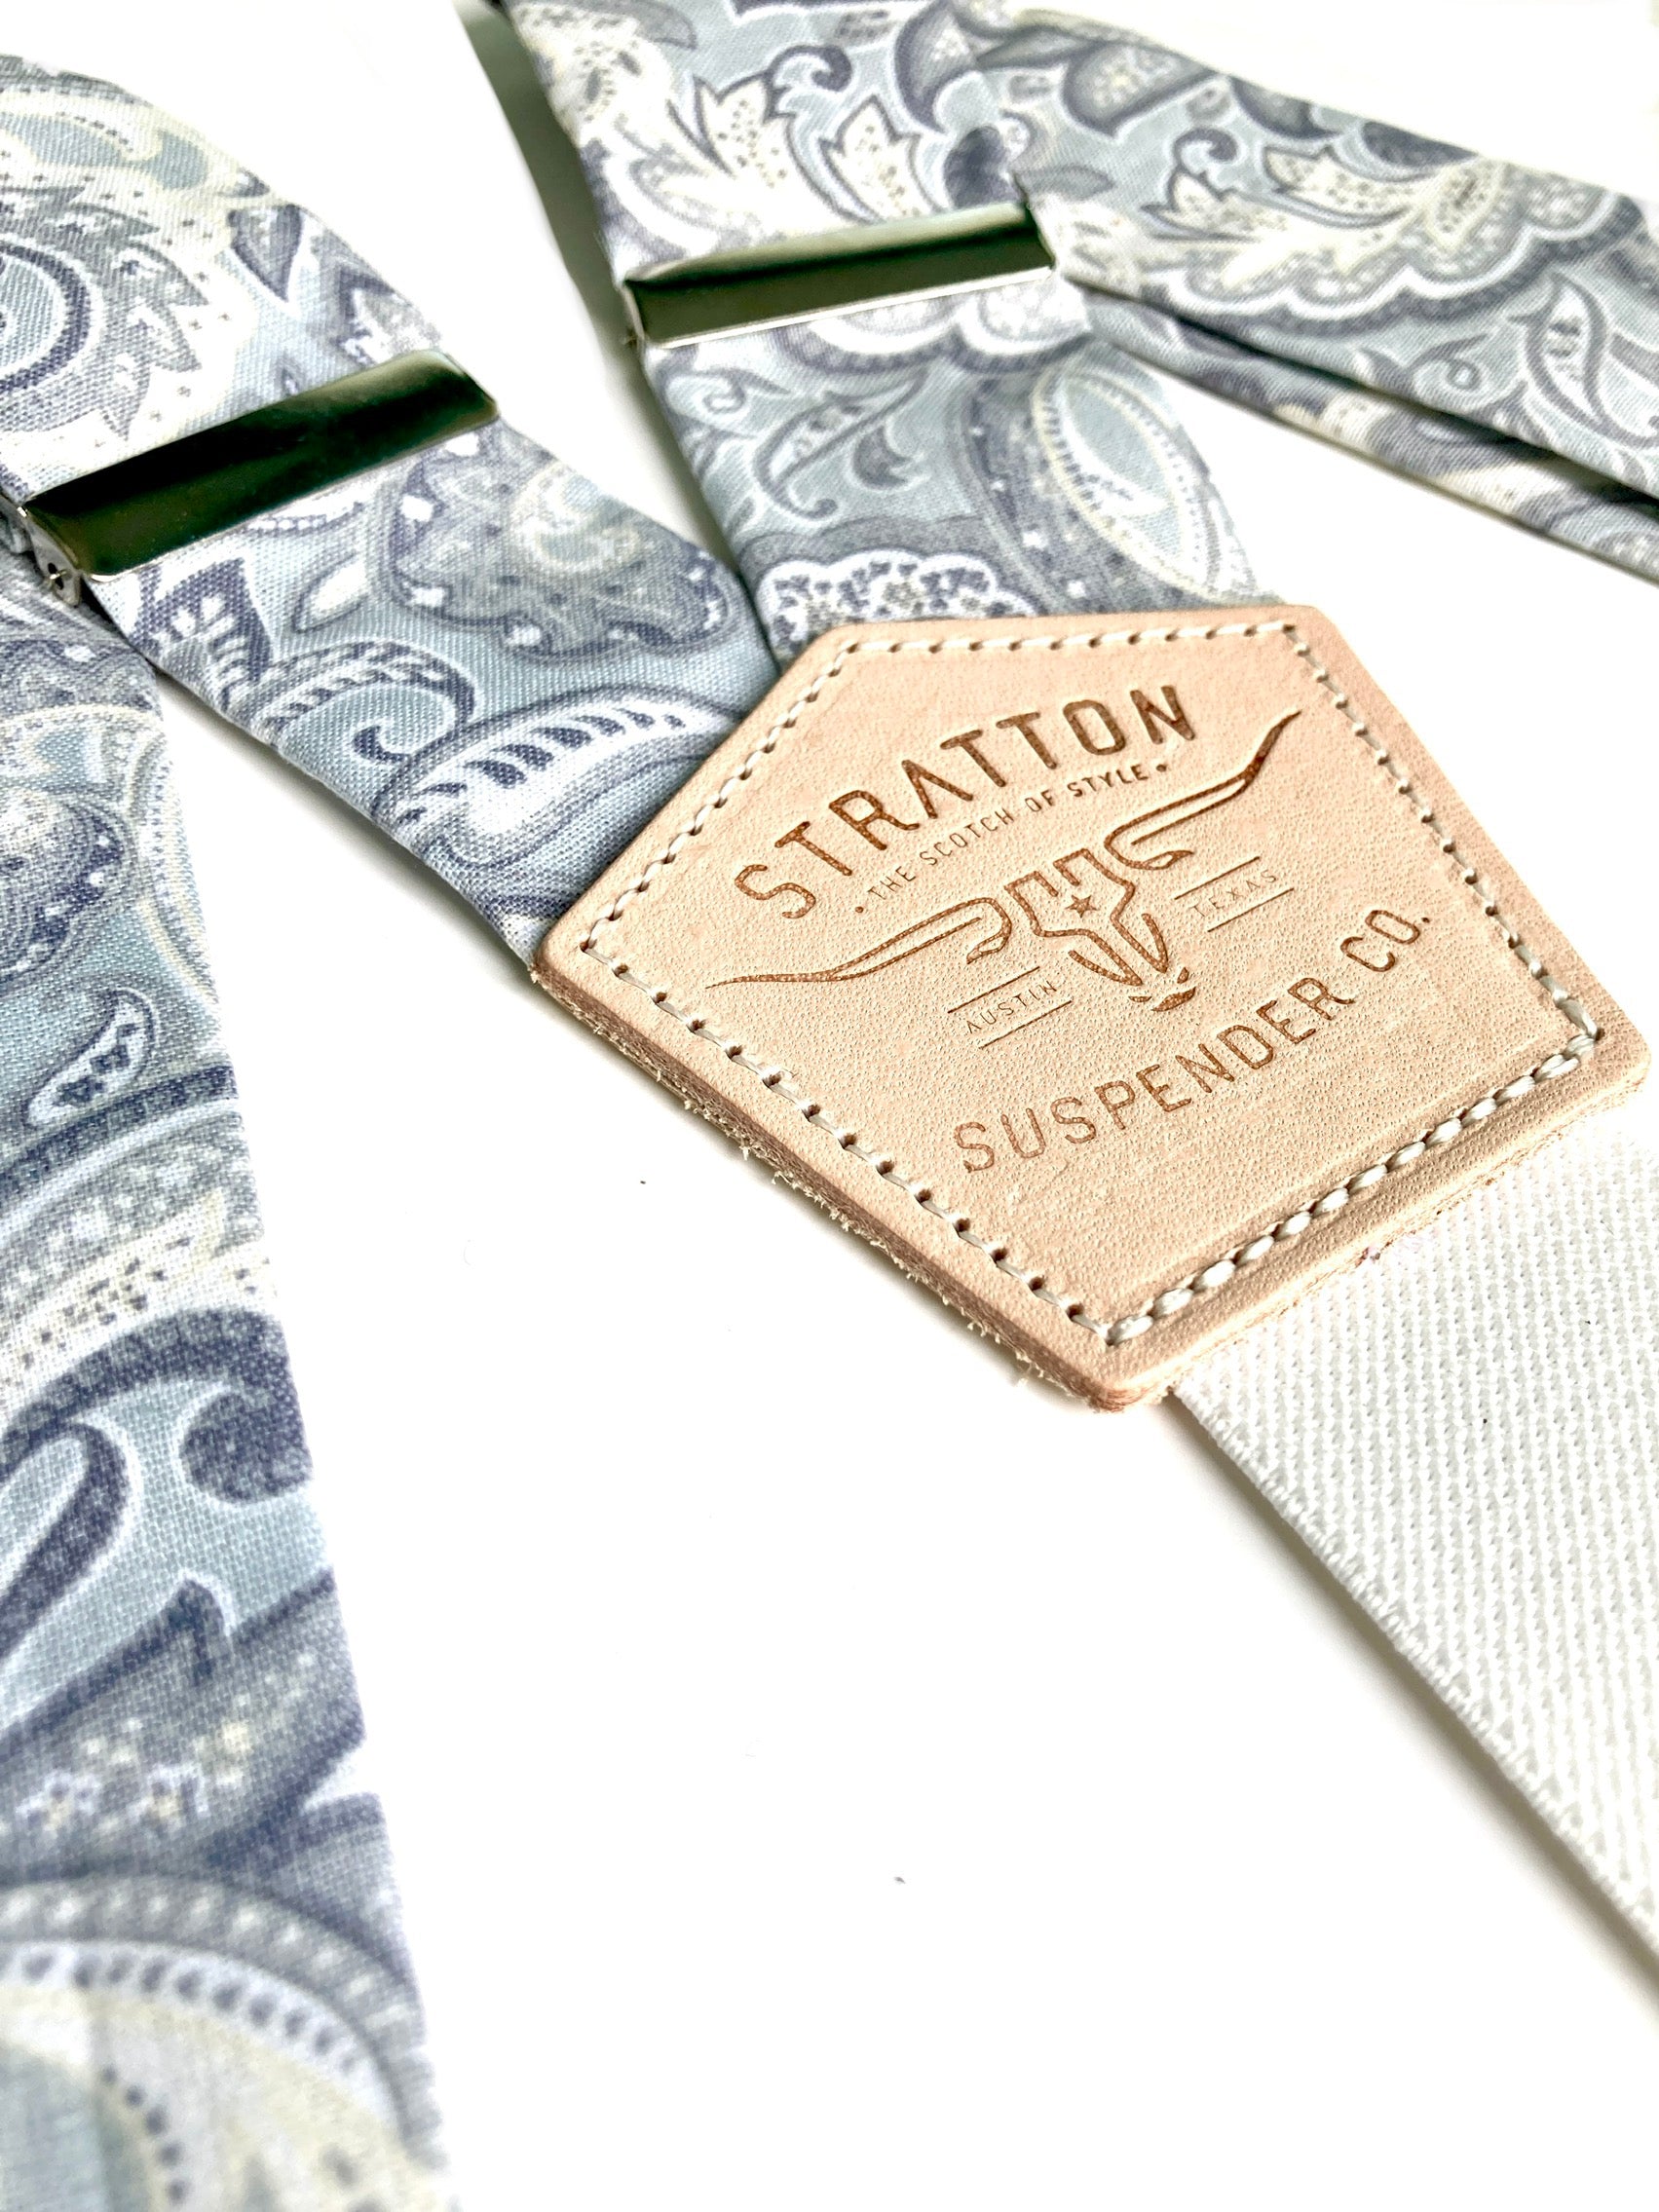 Stratton Suspender Co. Straps in Gray Paisley Cotton